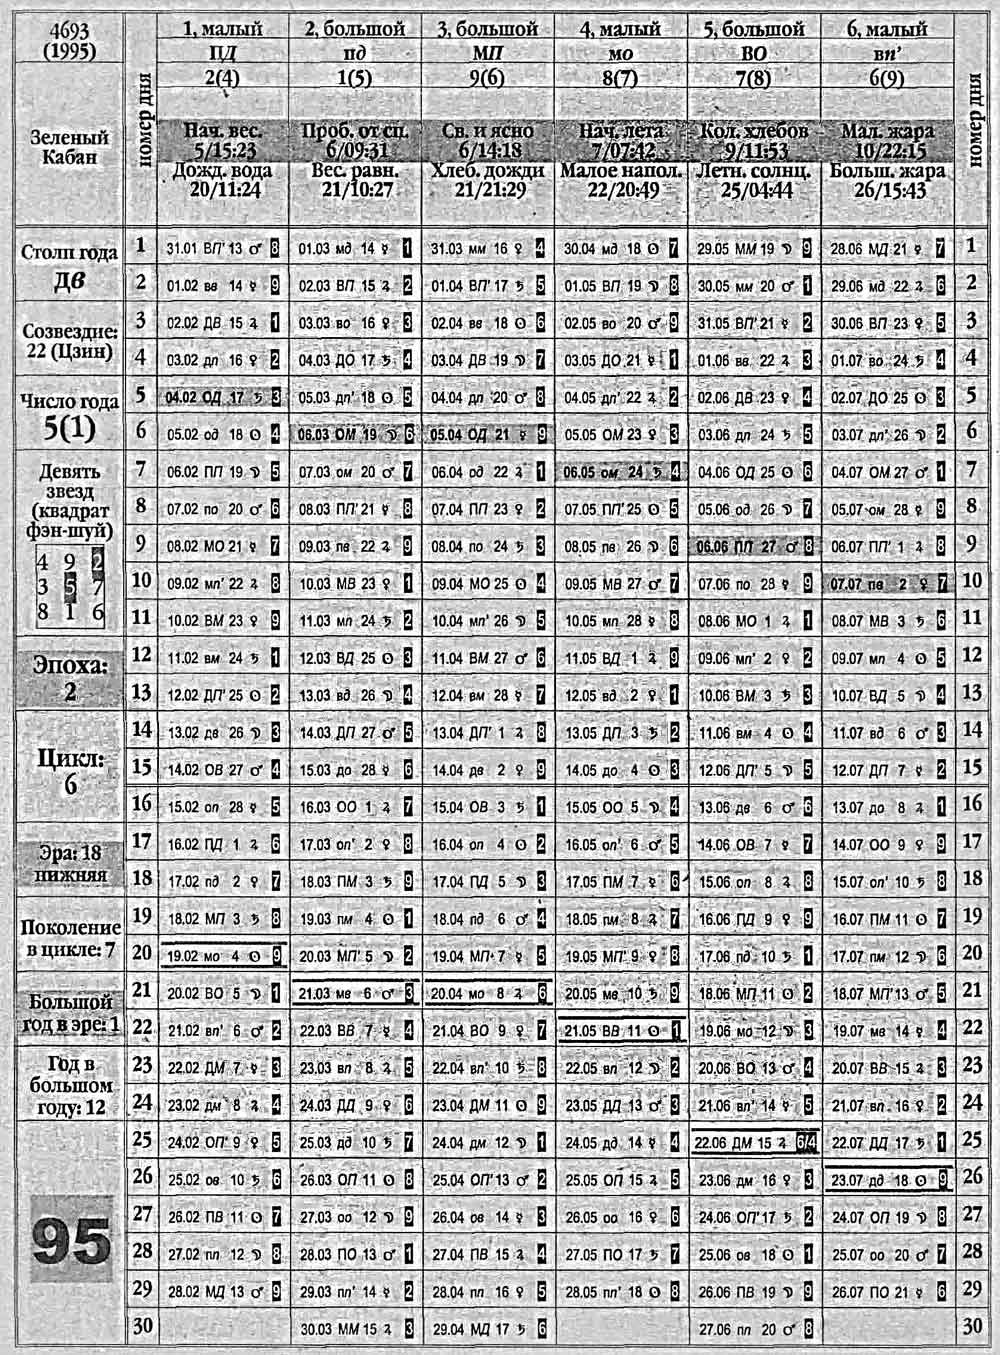 Китайский календарь 1995 года